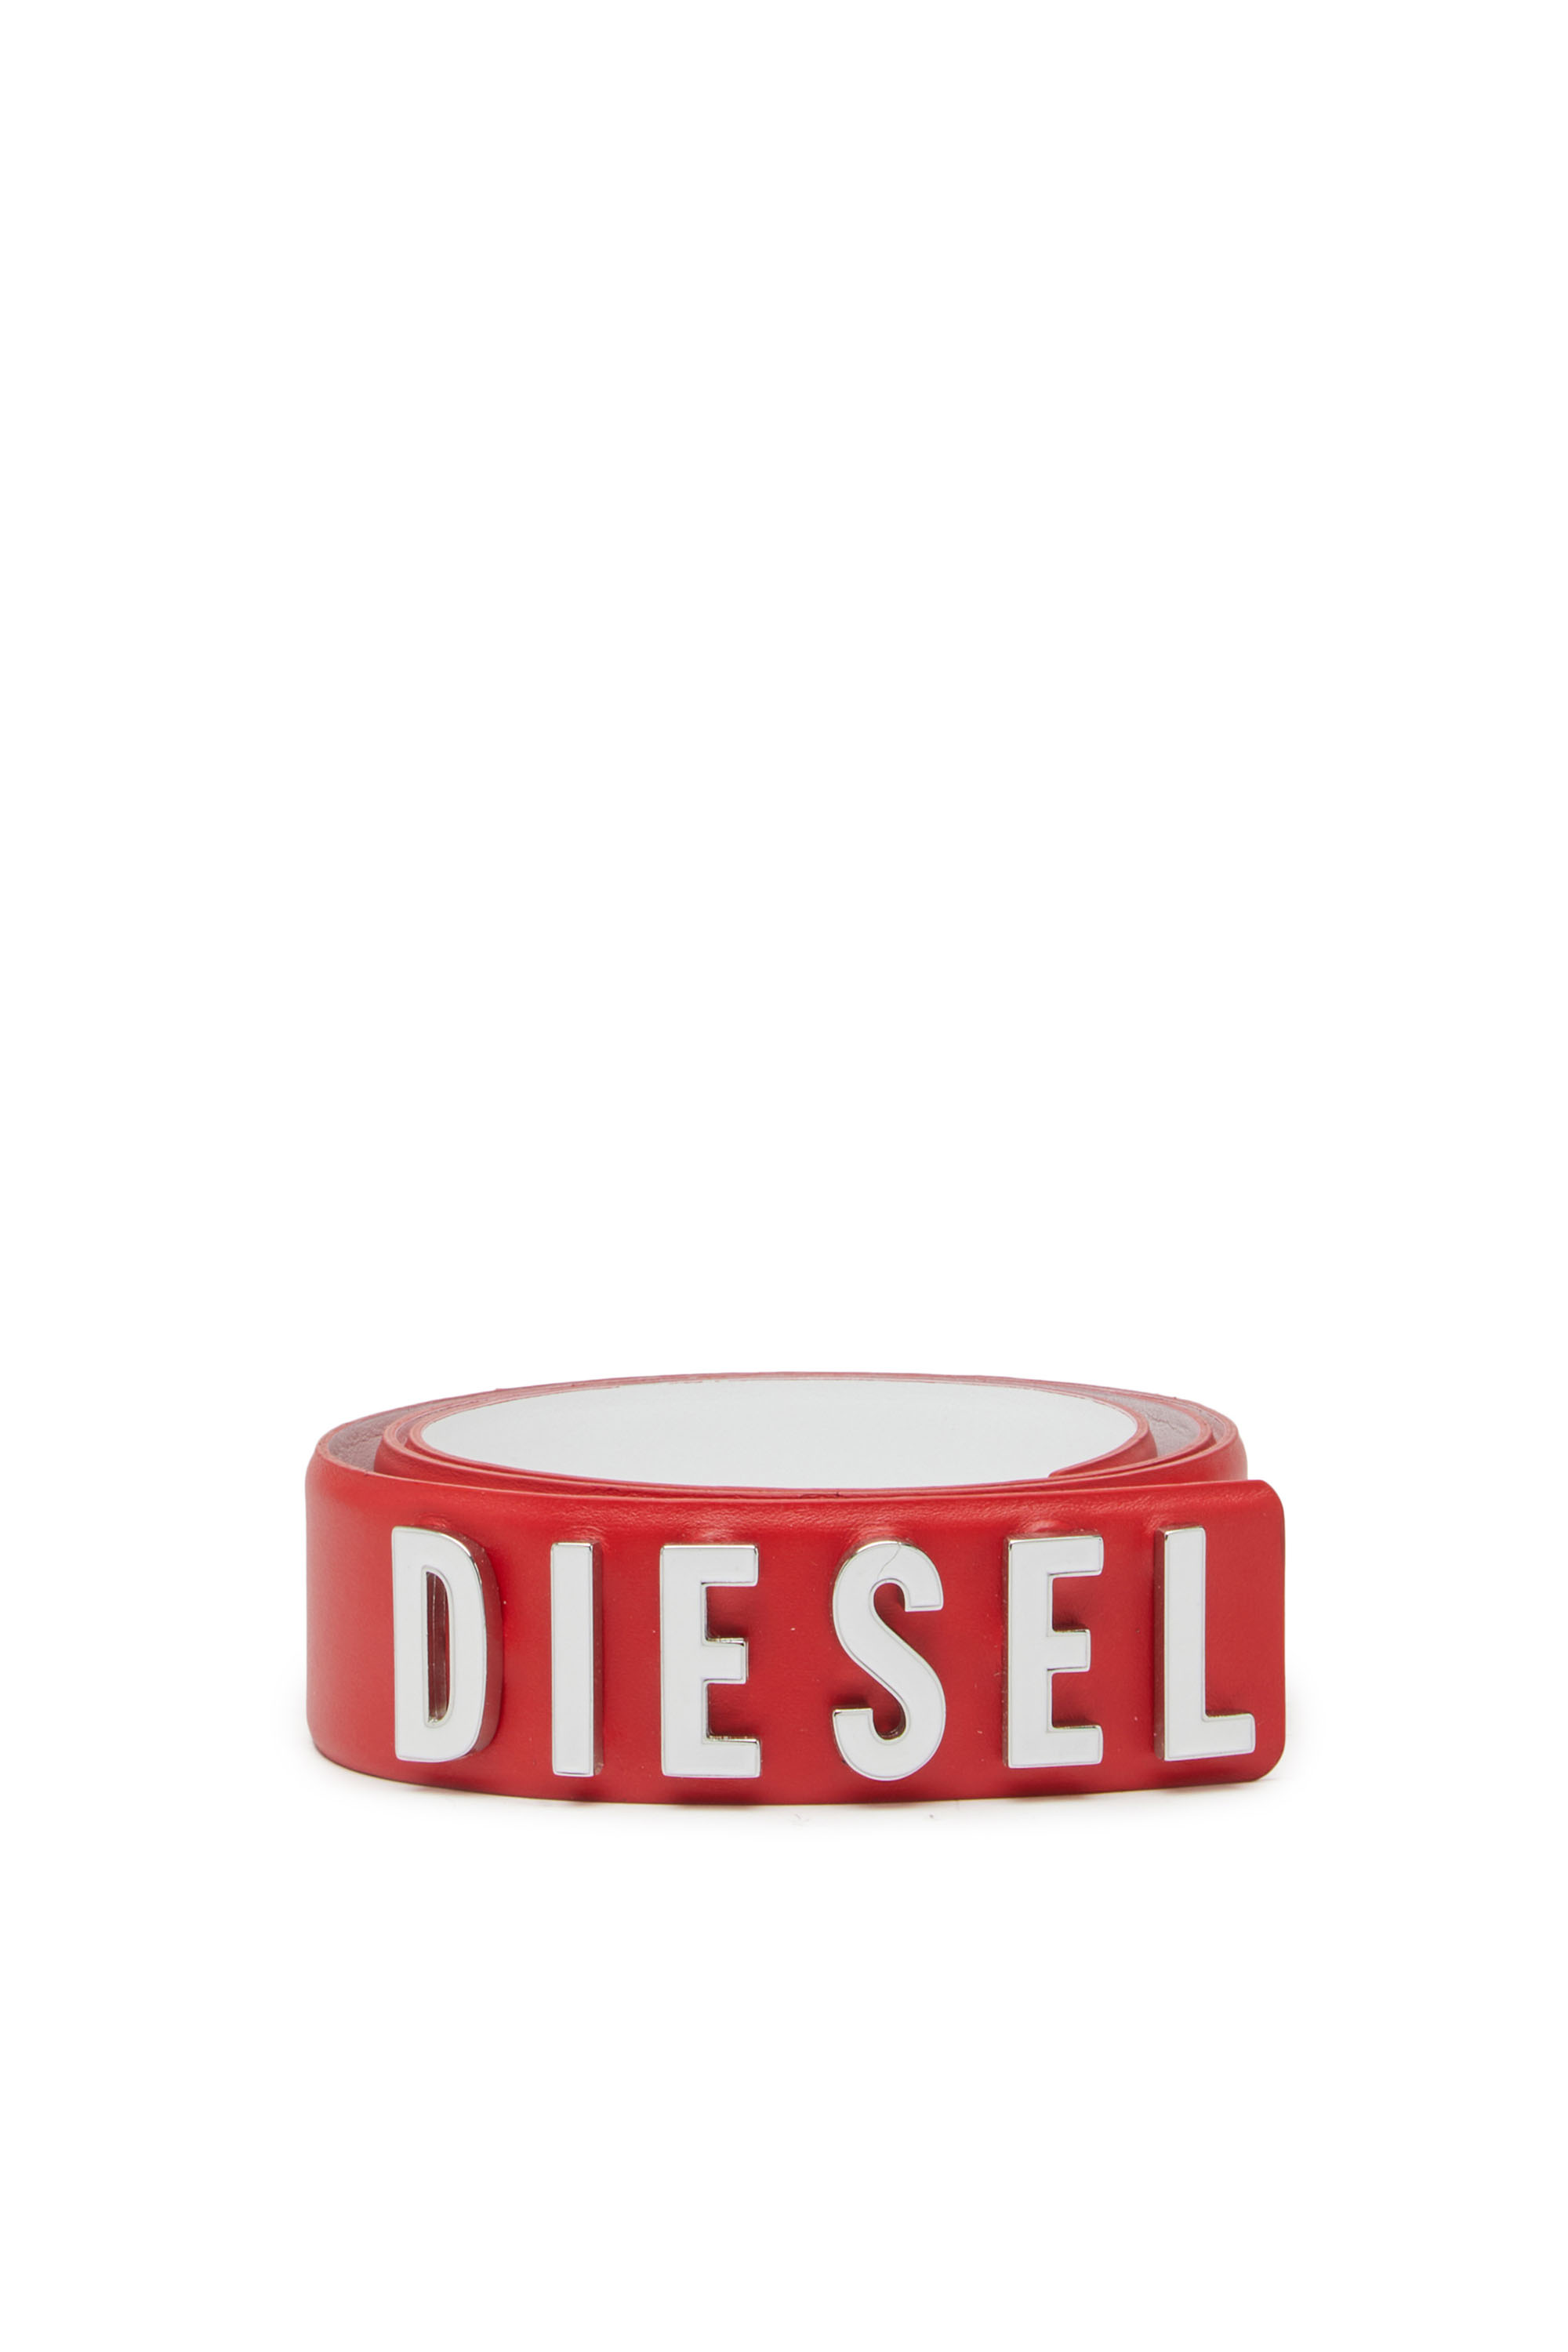 Diesel - B-LETTERS B, Rojo - Image 1